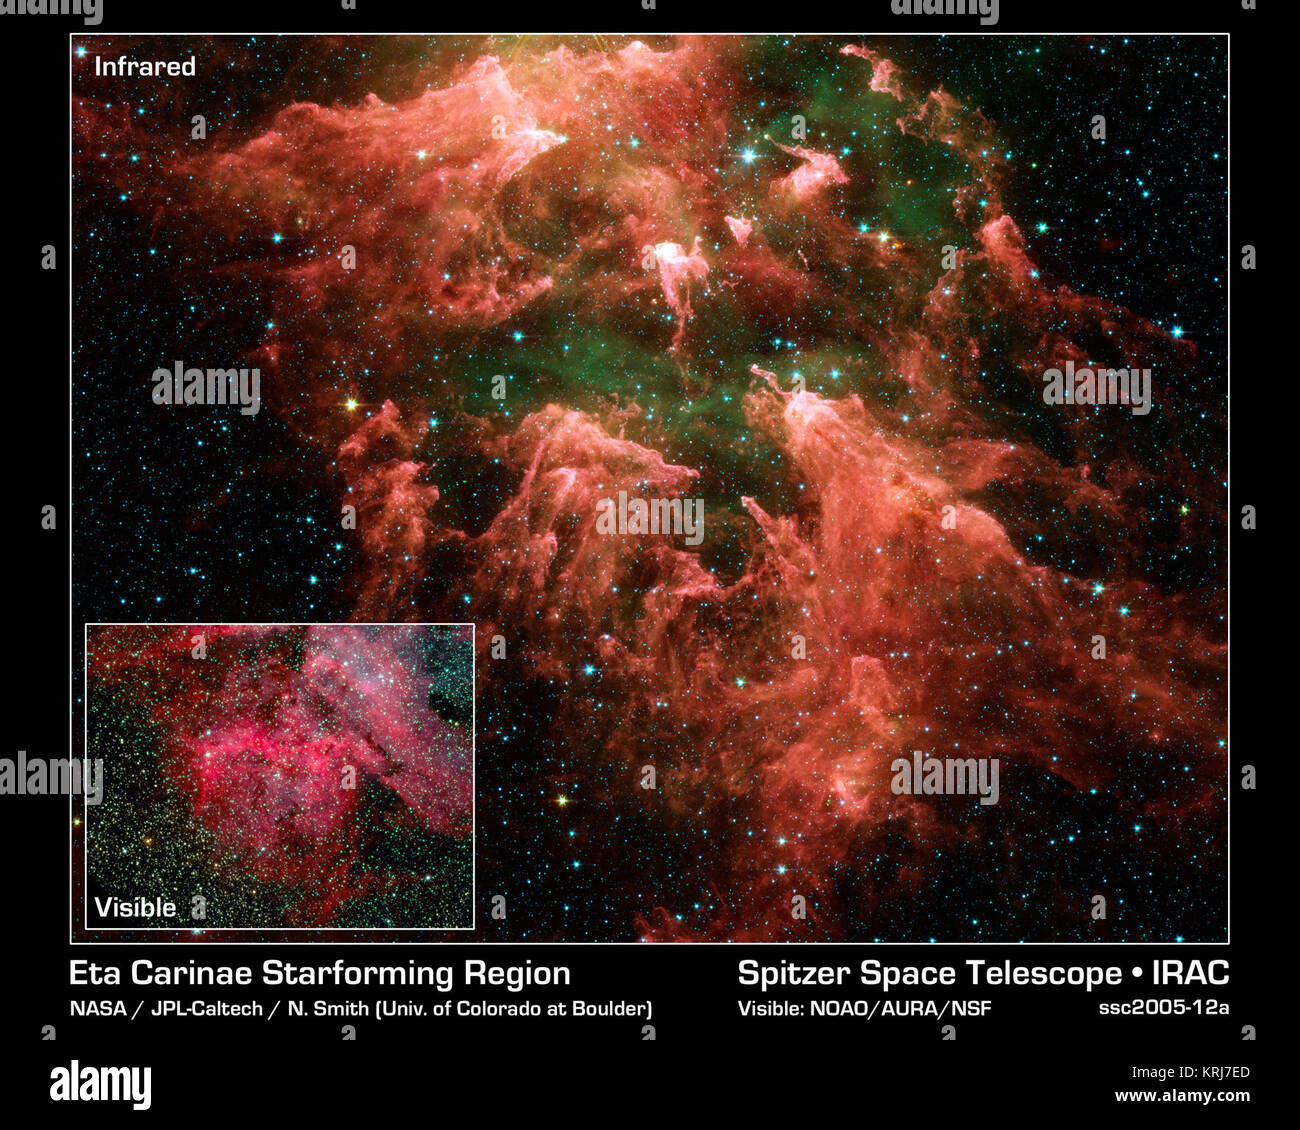 Questa falsa immagine a colori presi dalla NASA il telescopio spaziale Spitzer mostra il "Sud pilastro " regione di star-regione di formatura chiamato Carina Nebula. Cracking come aprire un cocomero e trovare i suoi semi, il telescopio ad infrarossi 'busted apri' questo oscuro cloud a rivelare star embrioni (giallo o bianco) nascosto all'interno di finger-come colonne di polvere densa (rosa). I gas caldi sono verdi e stelle di primo piano sono blu. Non tutte le stelle ritrovata gli embrioni possono essere facilmente individuato. Sebbene la nebulosa più famosi e stella massiccia, Eta Carinae, è troppo luminoso per essere osservate da telescopi a raggi infrarossi, la verso il basso-strea Foto Stock